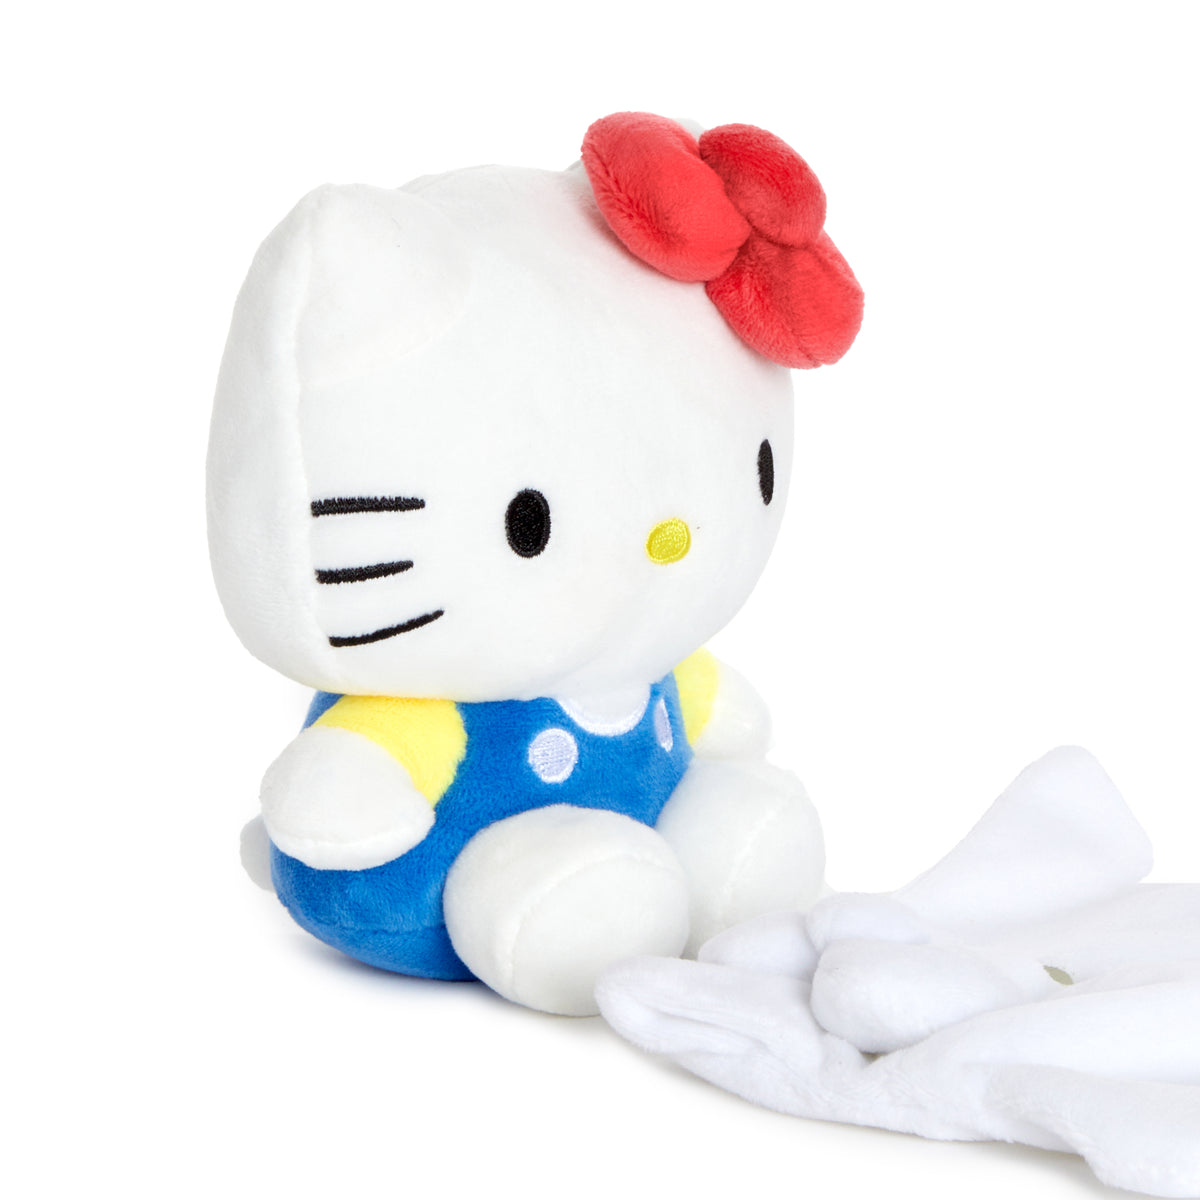 Sanrio Hello Kitty Keroppi 6 Plush